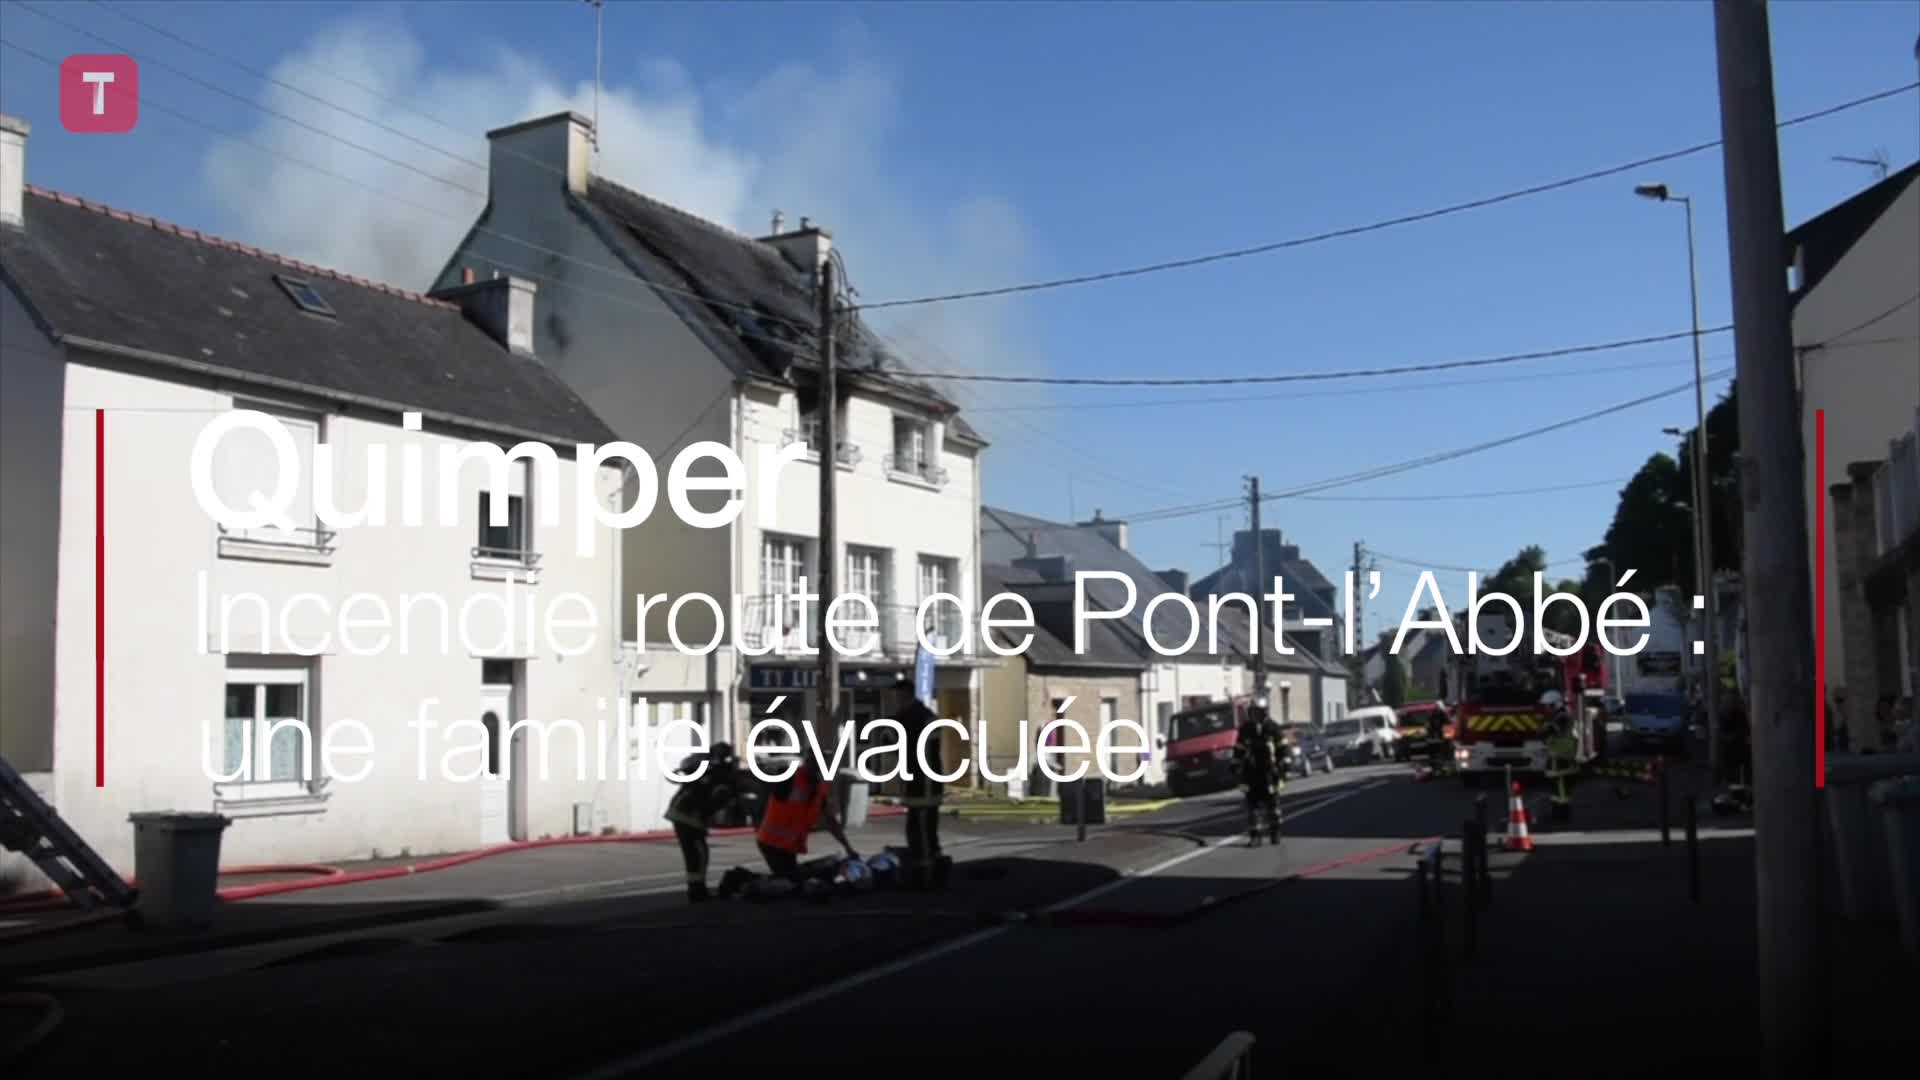 Quimper. Incendie route de Pont-l’Abbé : une famille évacuée (Le Télégramme)